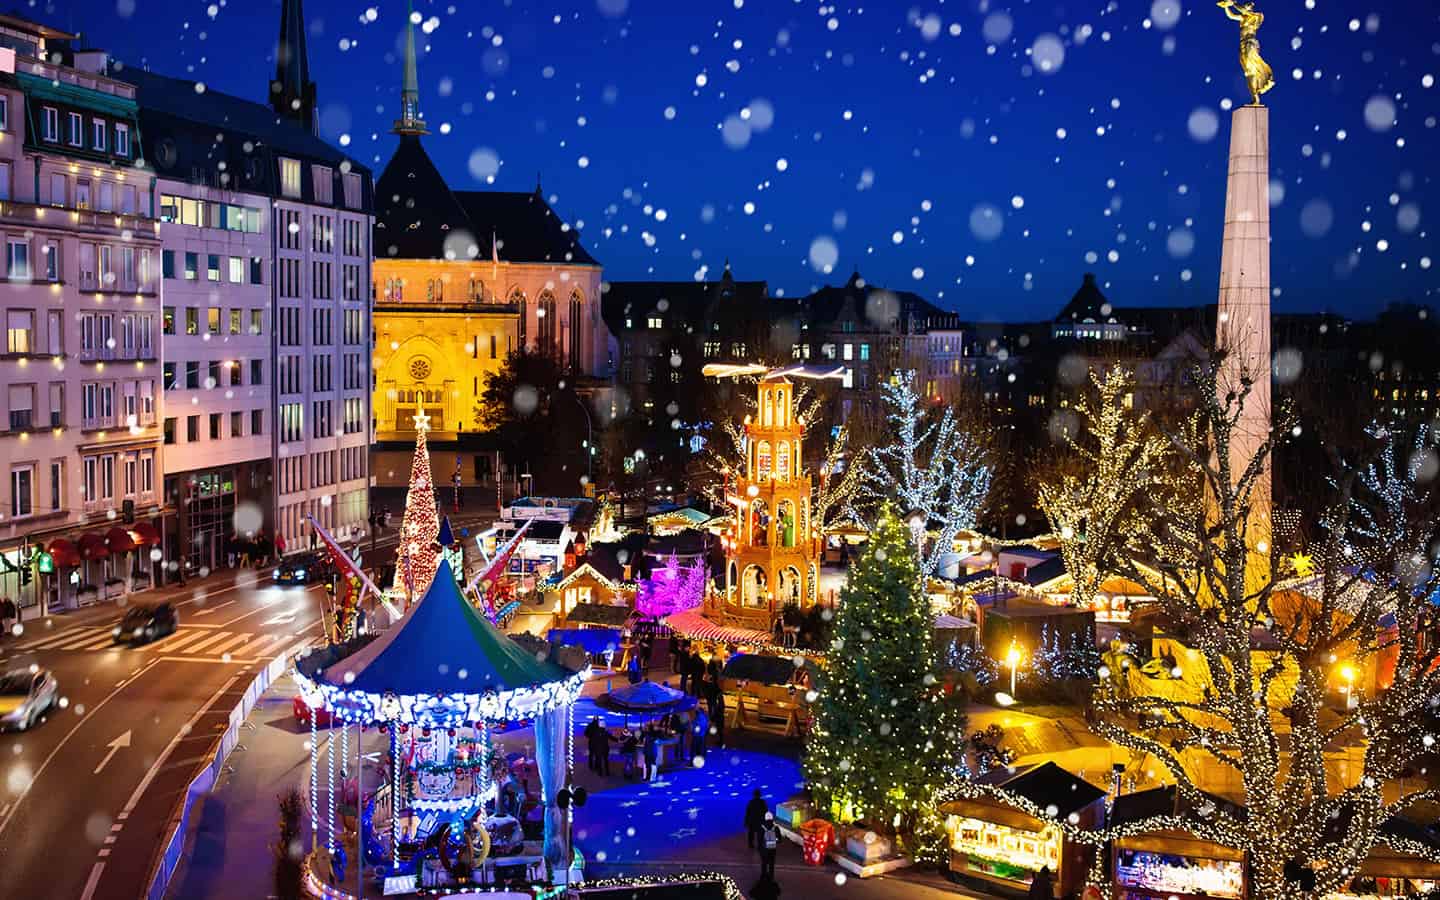 Traditionaller Weihnachtsmarkt im alten europaeischen Stadtzentrum in Luxemburg